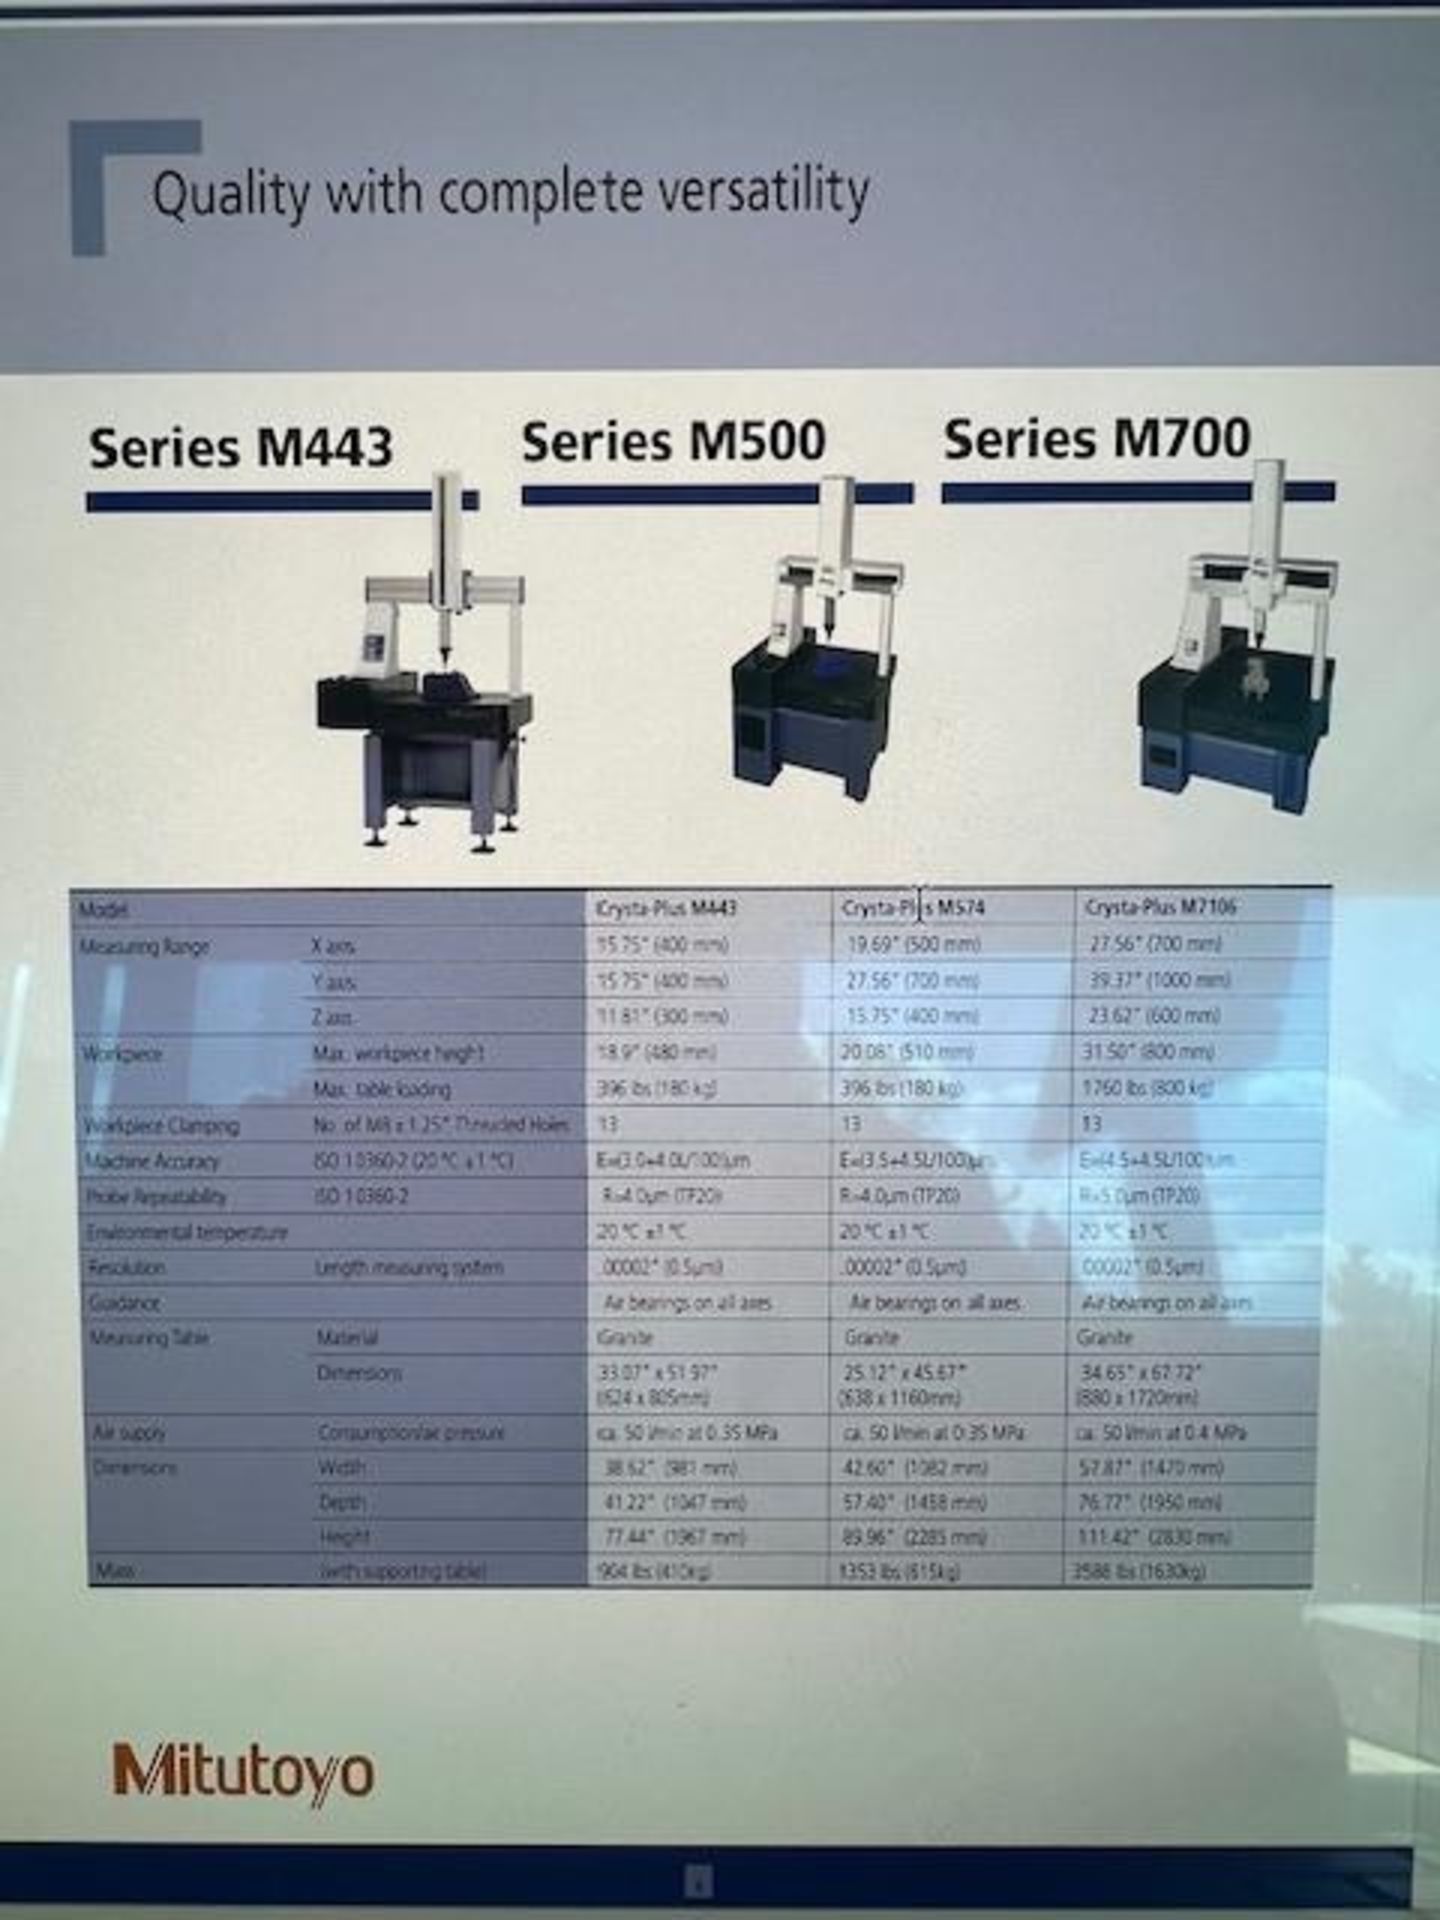 (2019)Mitutoyo Crysta-Plus "M7106" CNC Coordinate Measuring M/C - Hopkins, MI - Image 11 of 19